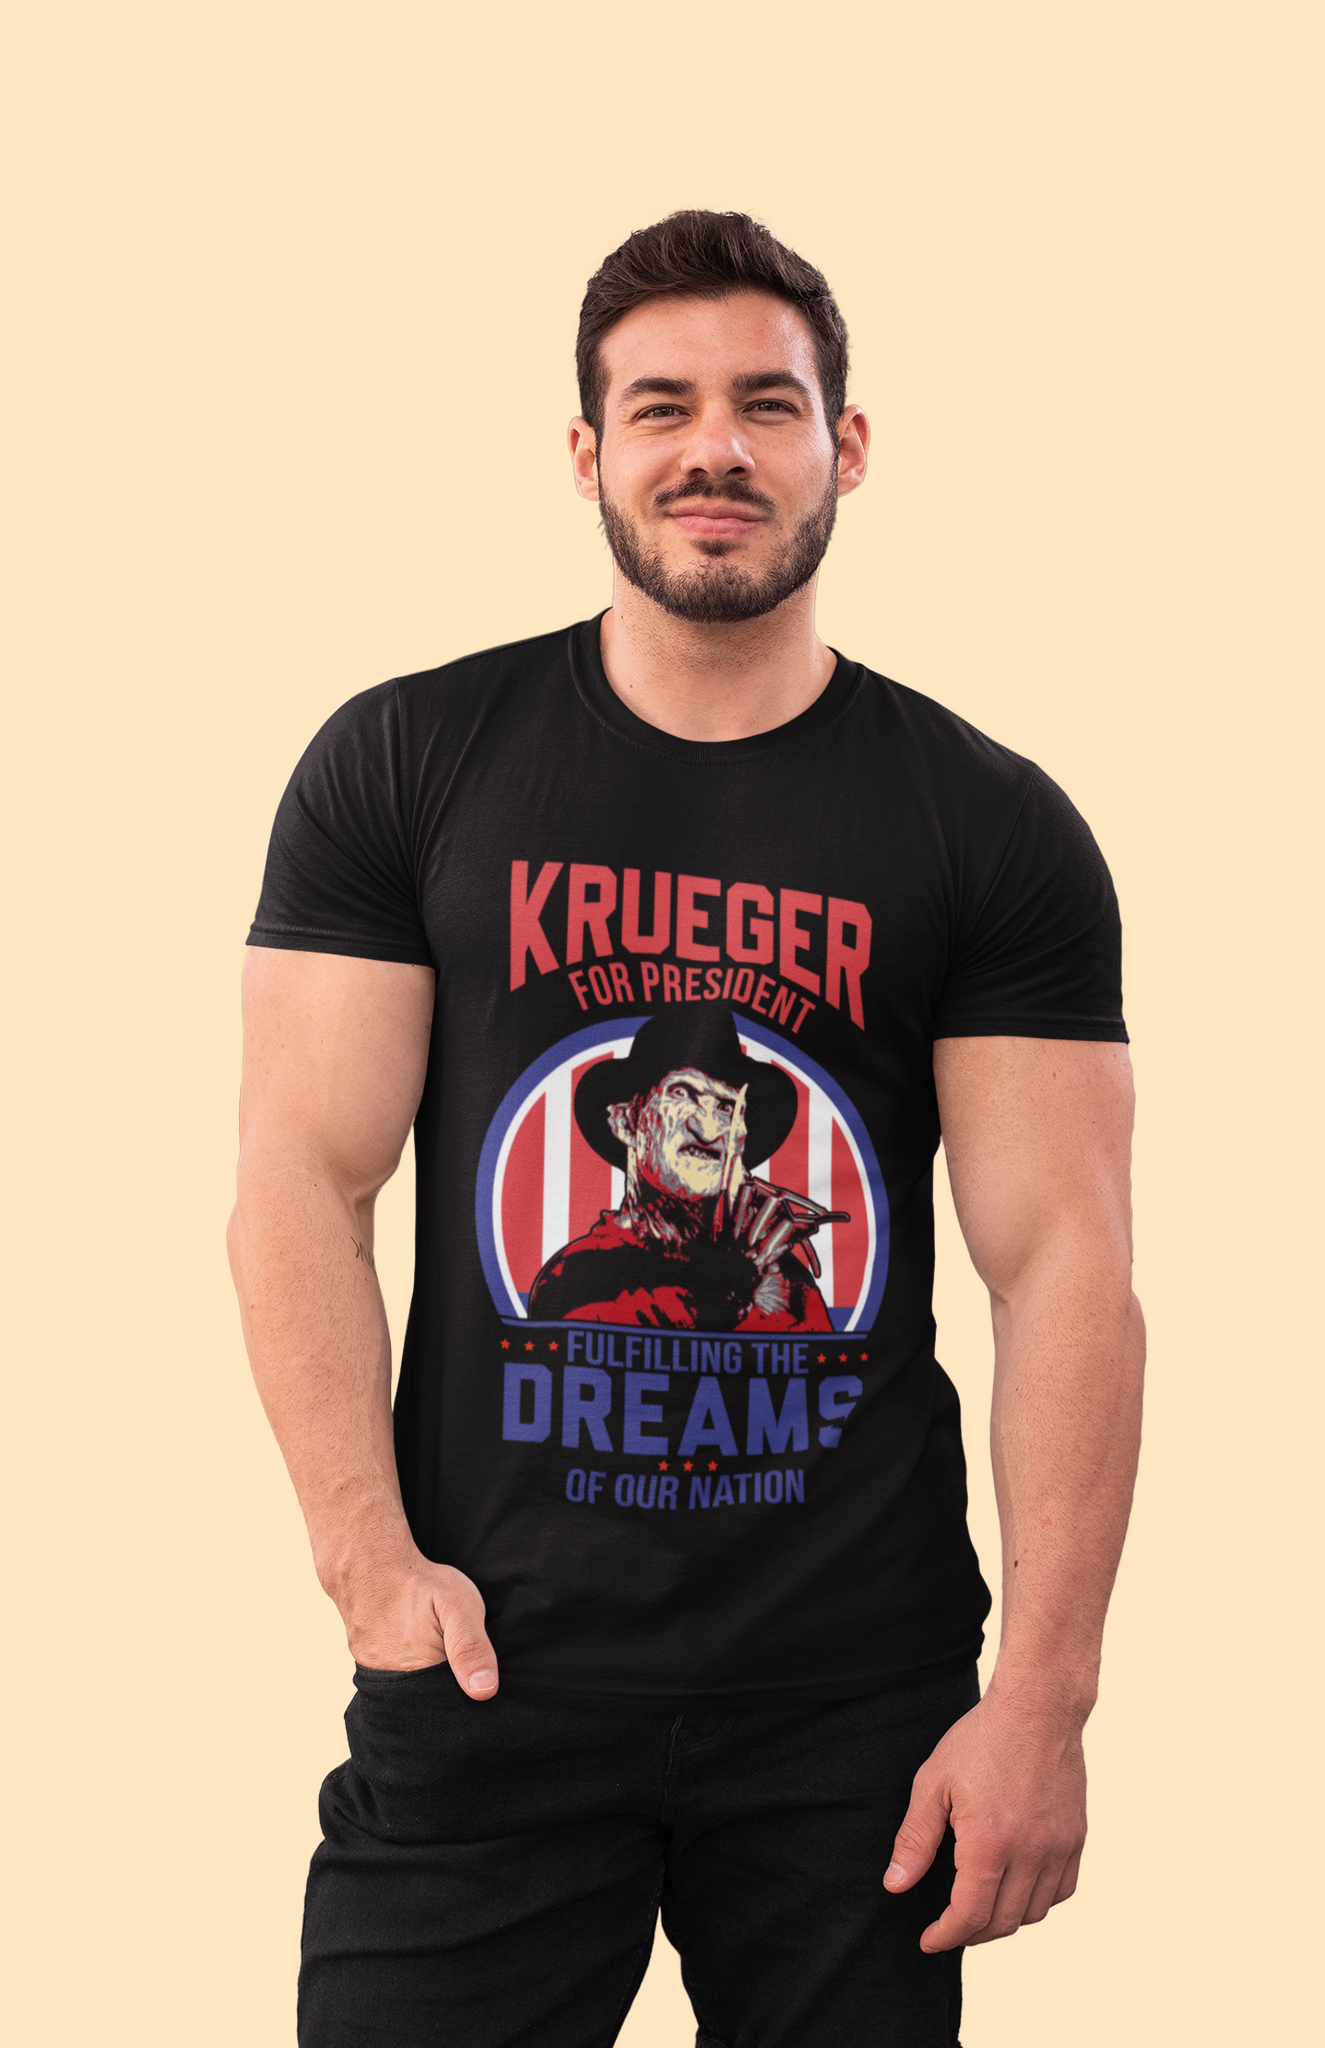 Nightmare On Elm Street Shirt, Freddy Krueger For President 2024 Shirt, Fullfilling The Dreams Of Our Nation Shirt